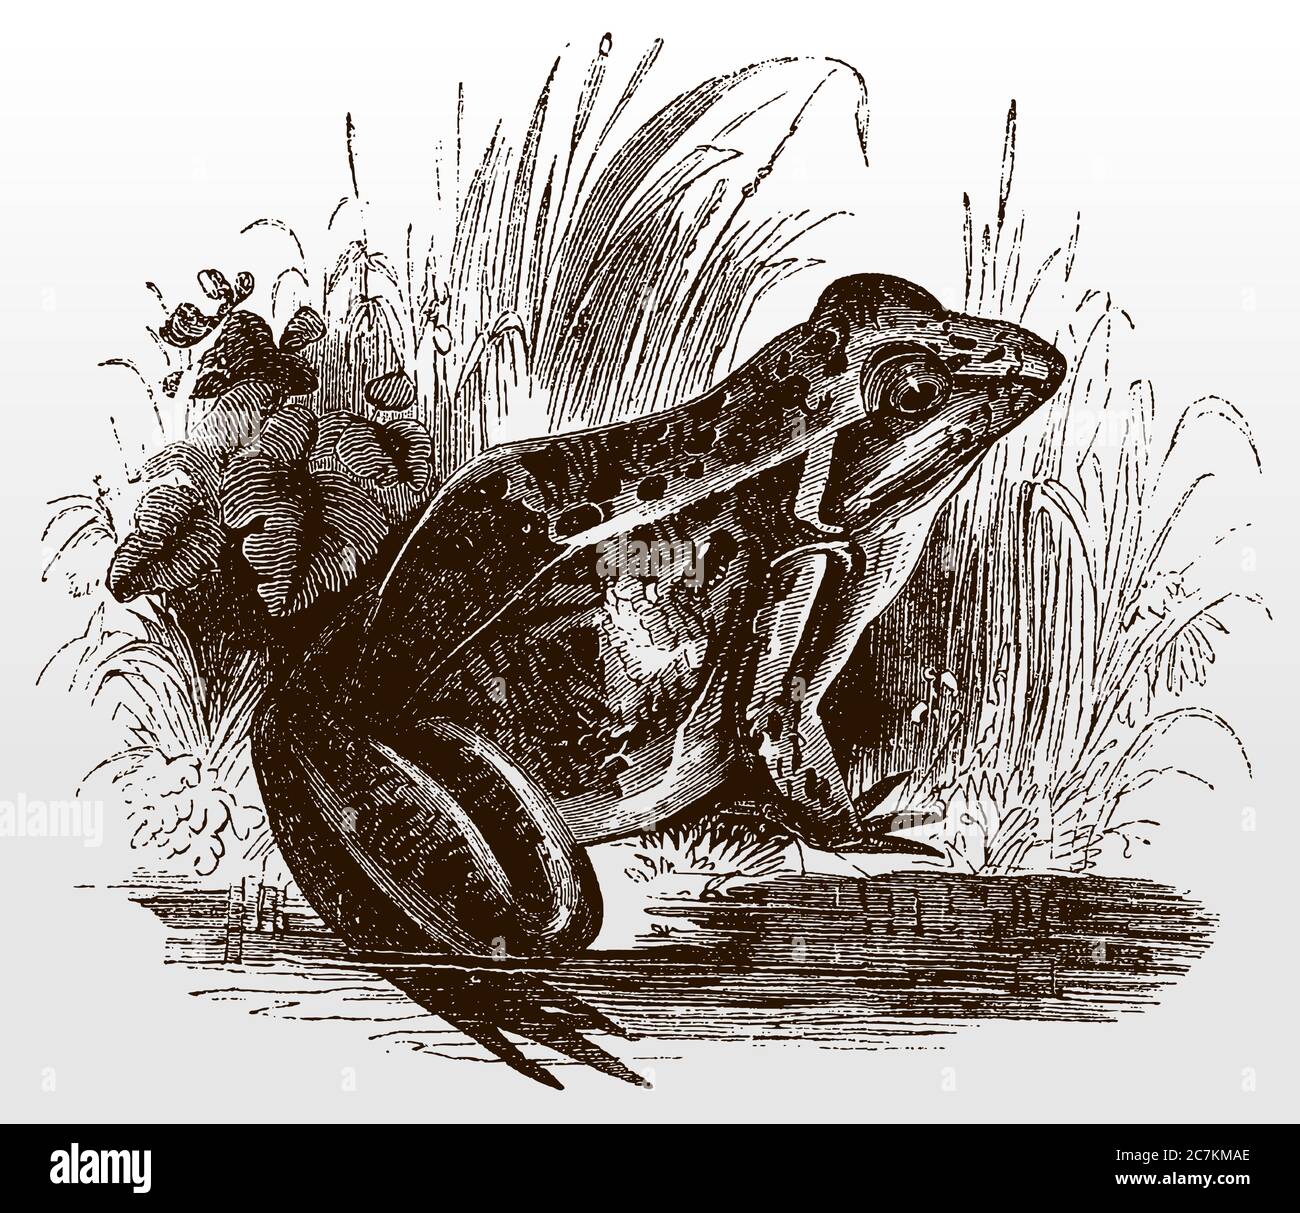 Grenouille commune, rana temporaria en vue latérale, assise sur le rivage d'un étang, après une illustration antique du XIXe siècle Illustration de Vecteur